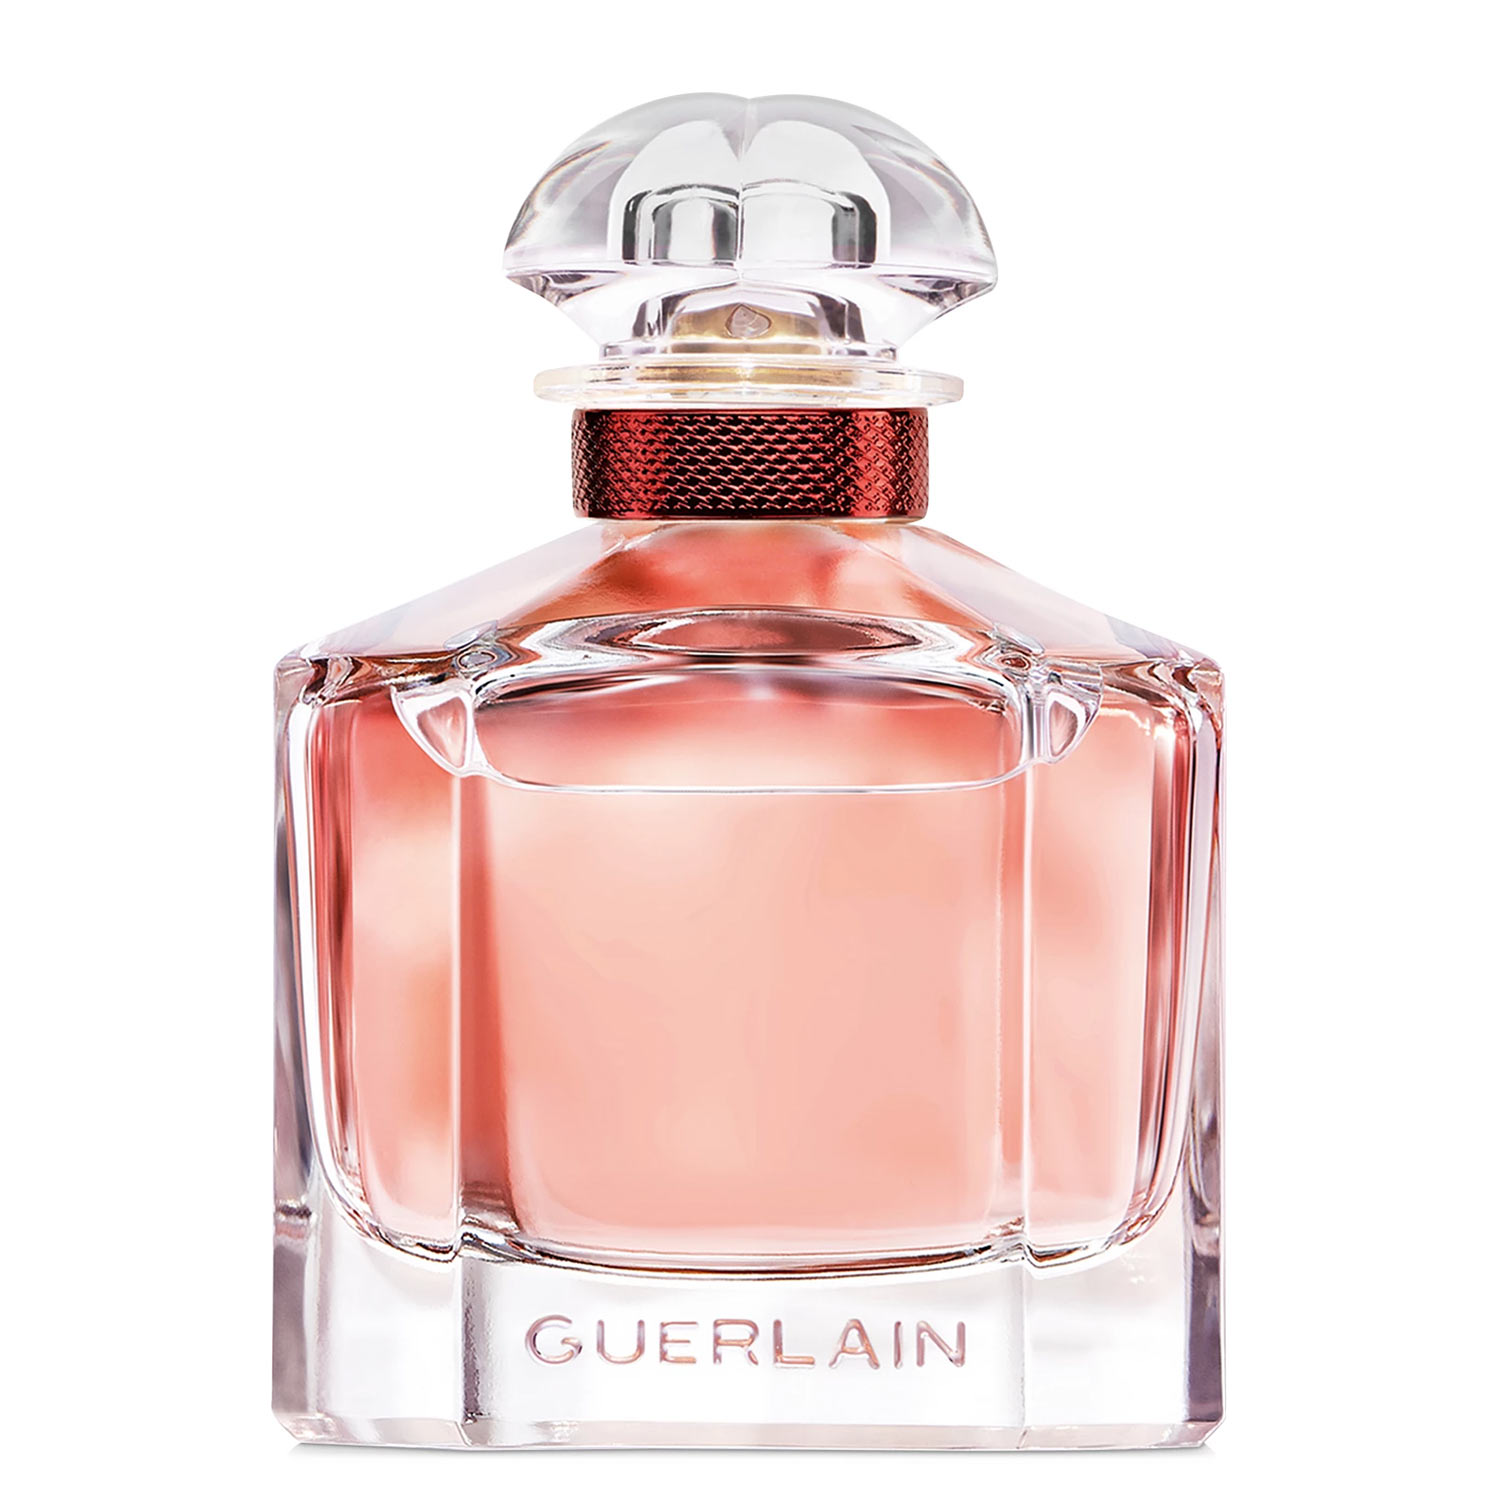 Mon-Guerlain-Bloom-of-Rose-Eau-de-Parfum-Guerlain